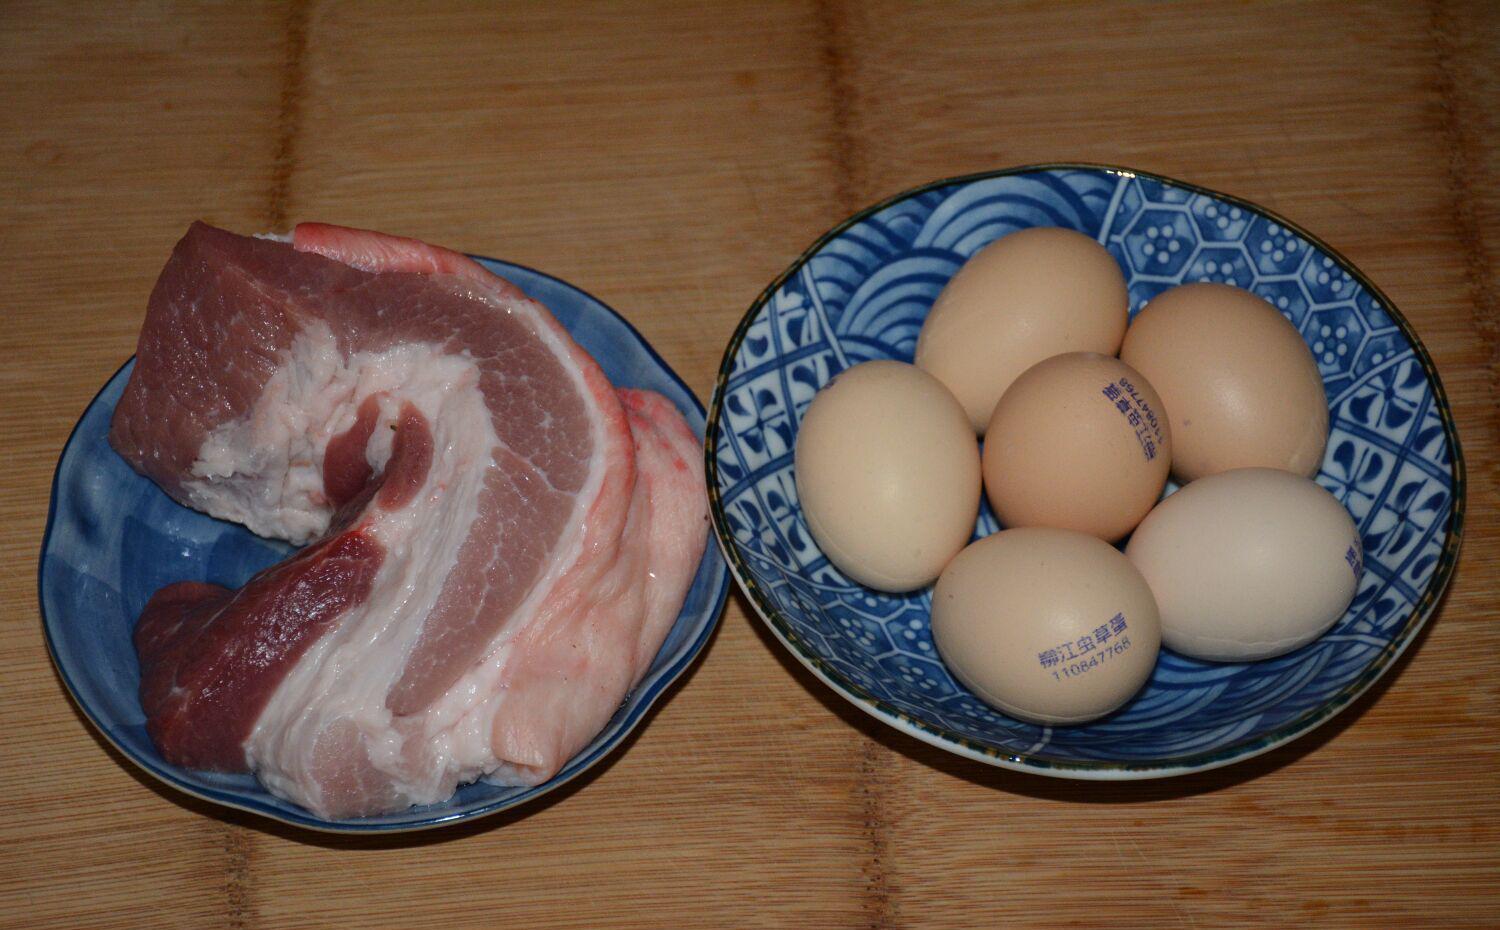 非遗美食:6个鸡蛋,1斤猪肉,做法独特,比包饺子